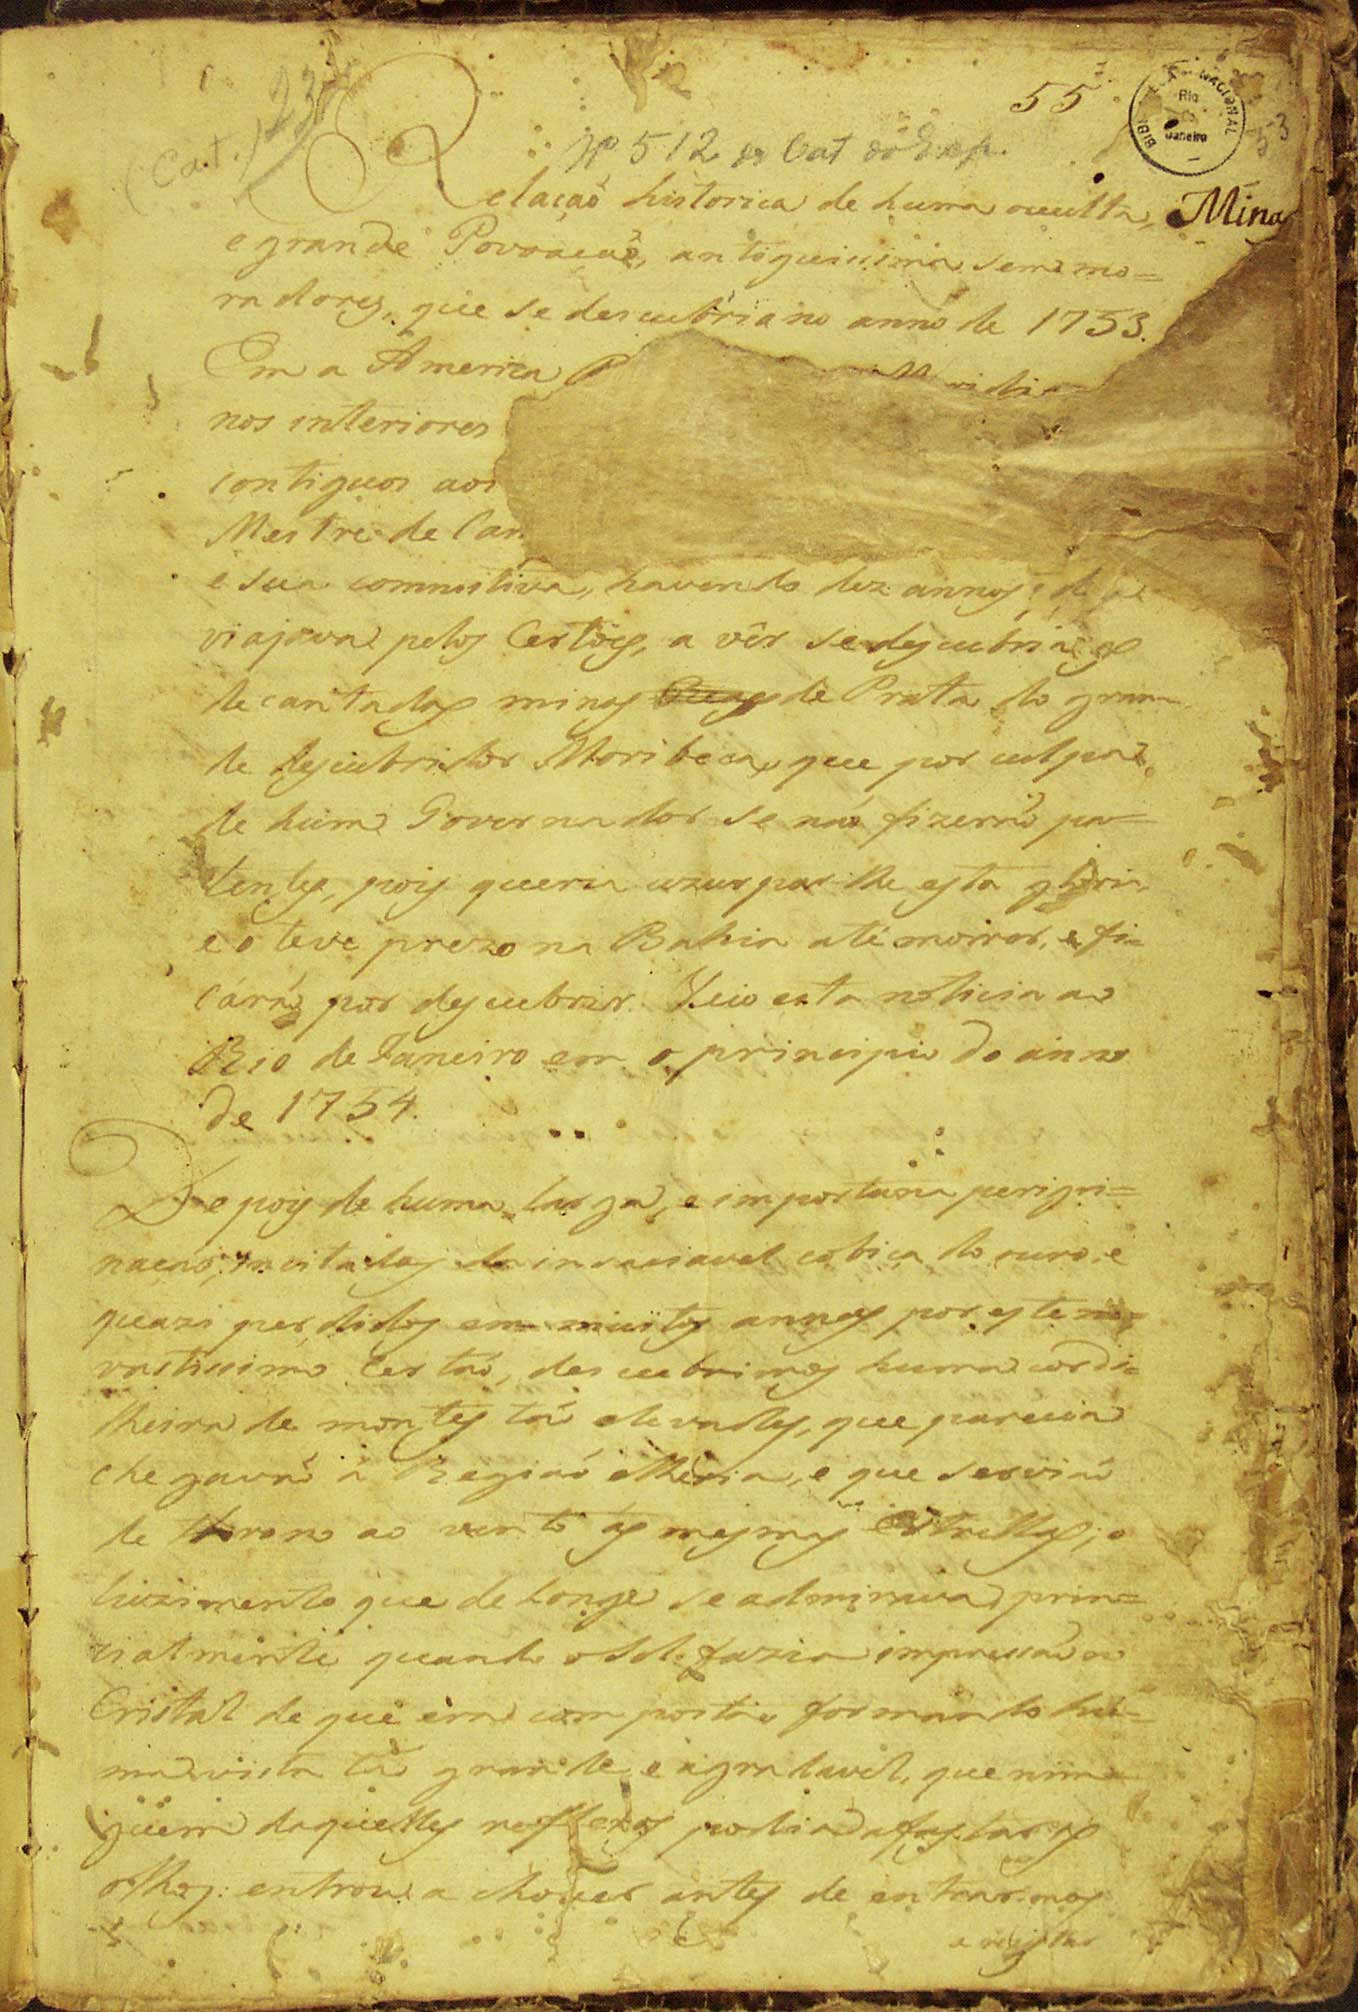 Pagina 1 van Manuscript 512, gepubliceerd in 1753 (onbekende auteur).